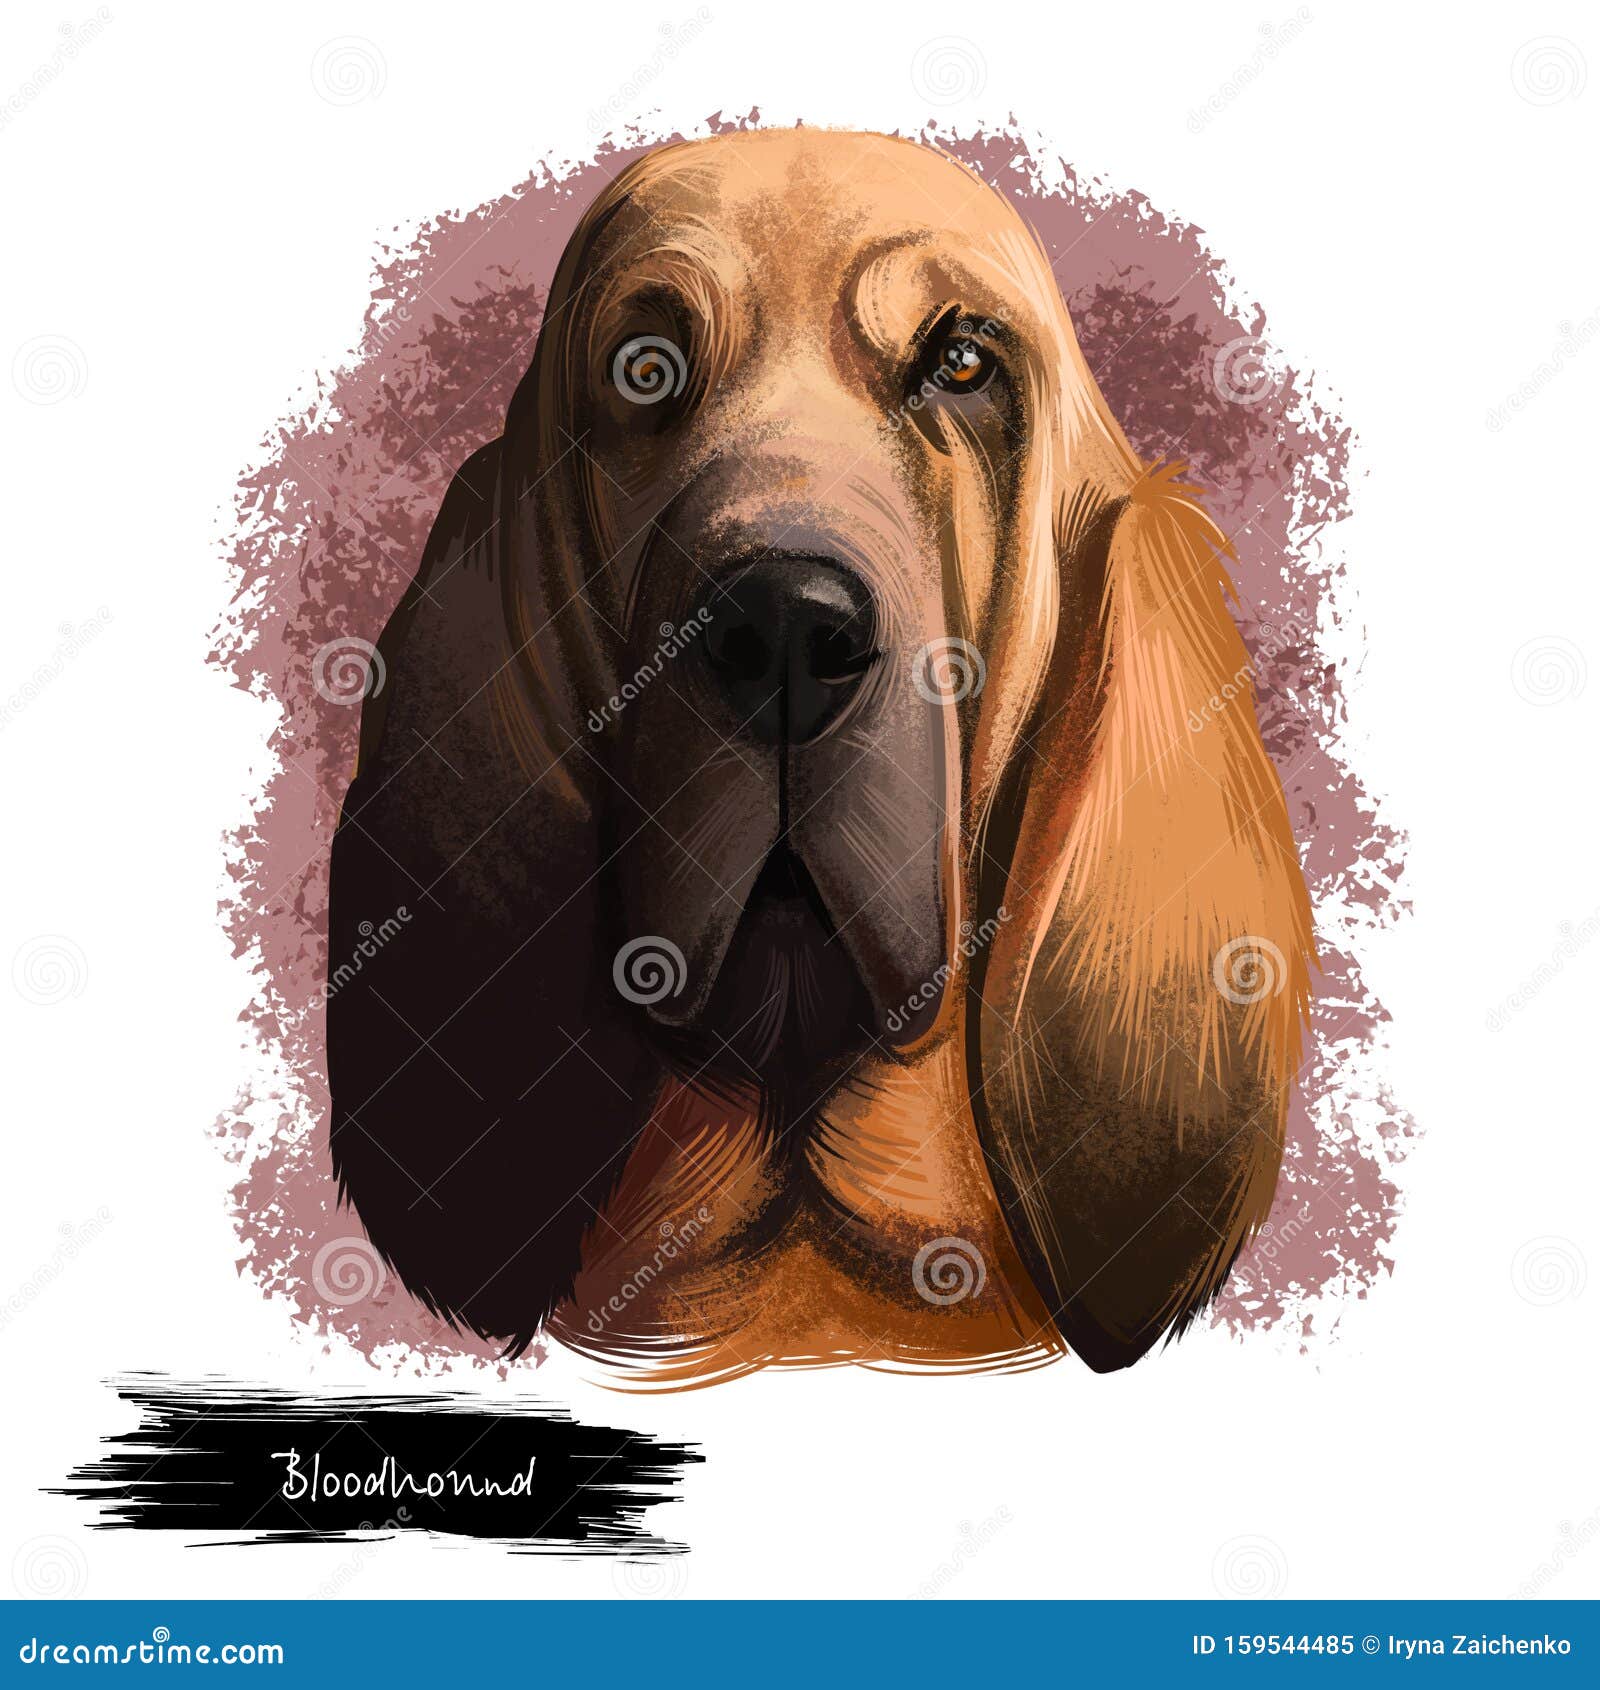 bloodhound, chien de saint-hubert, st. hubert hound dog digital art   on white background. norwegian origin